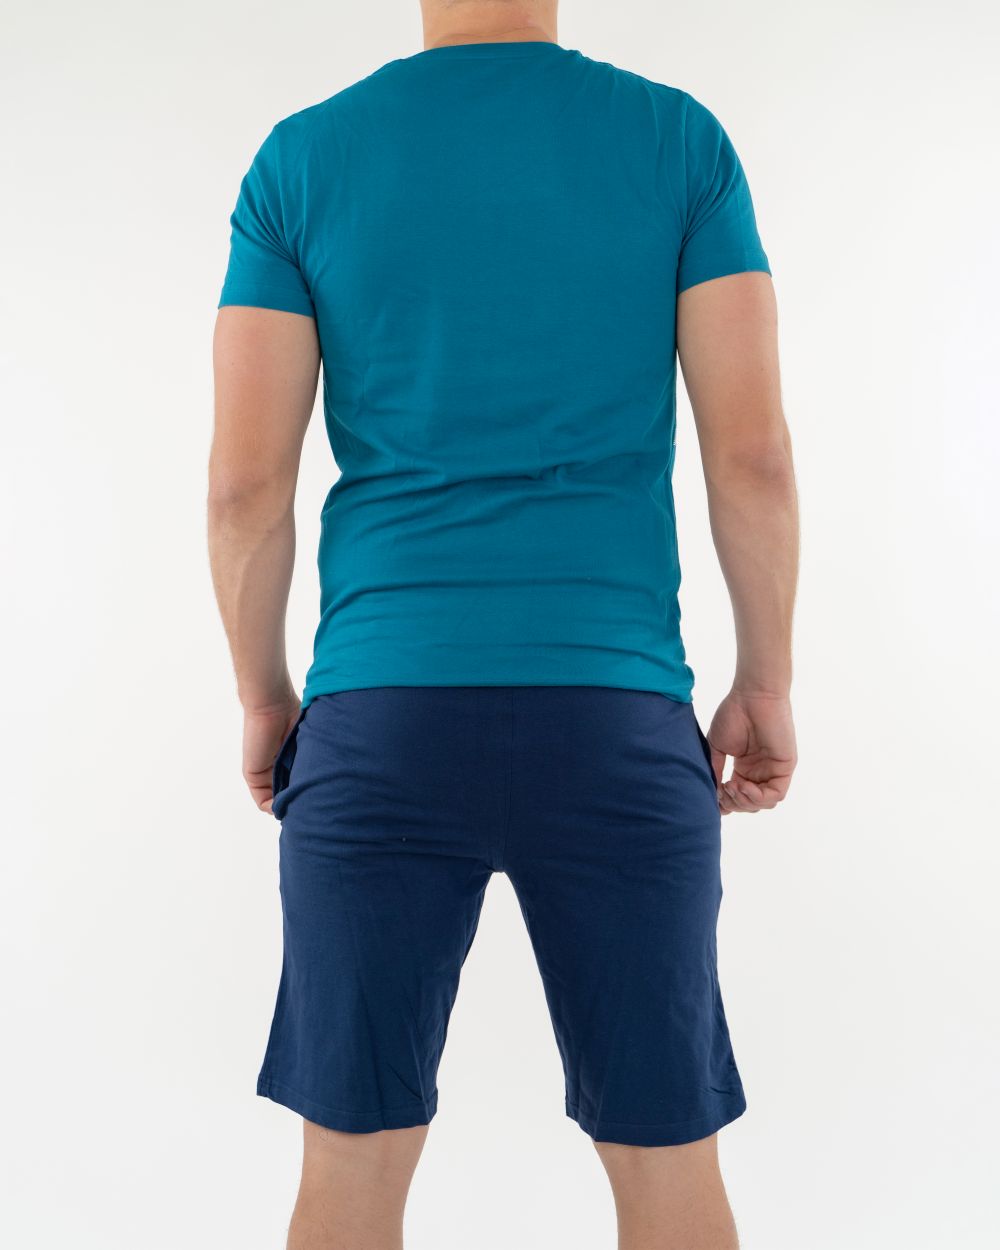 Navigare Intimo - Letnja muška pidžama plave boje